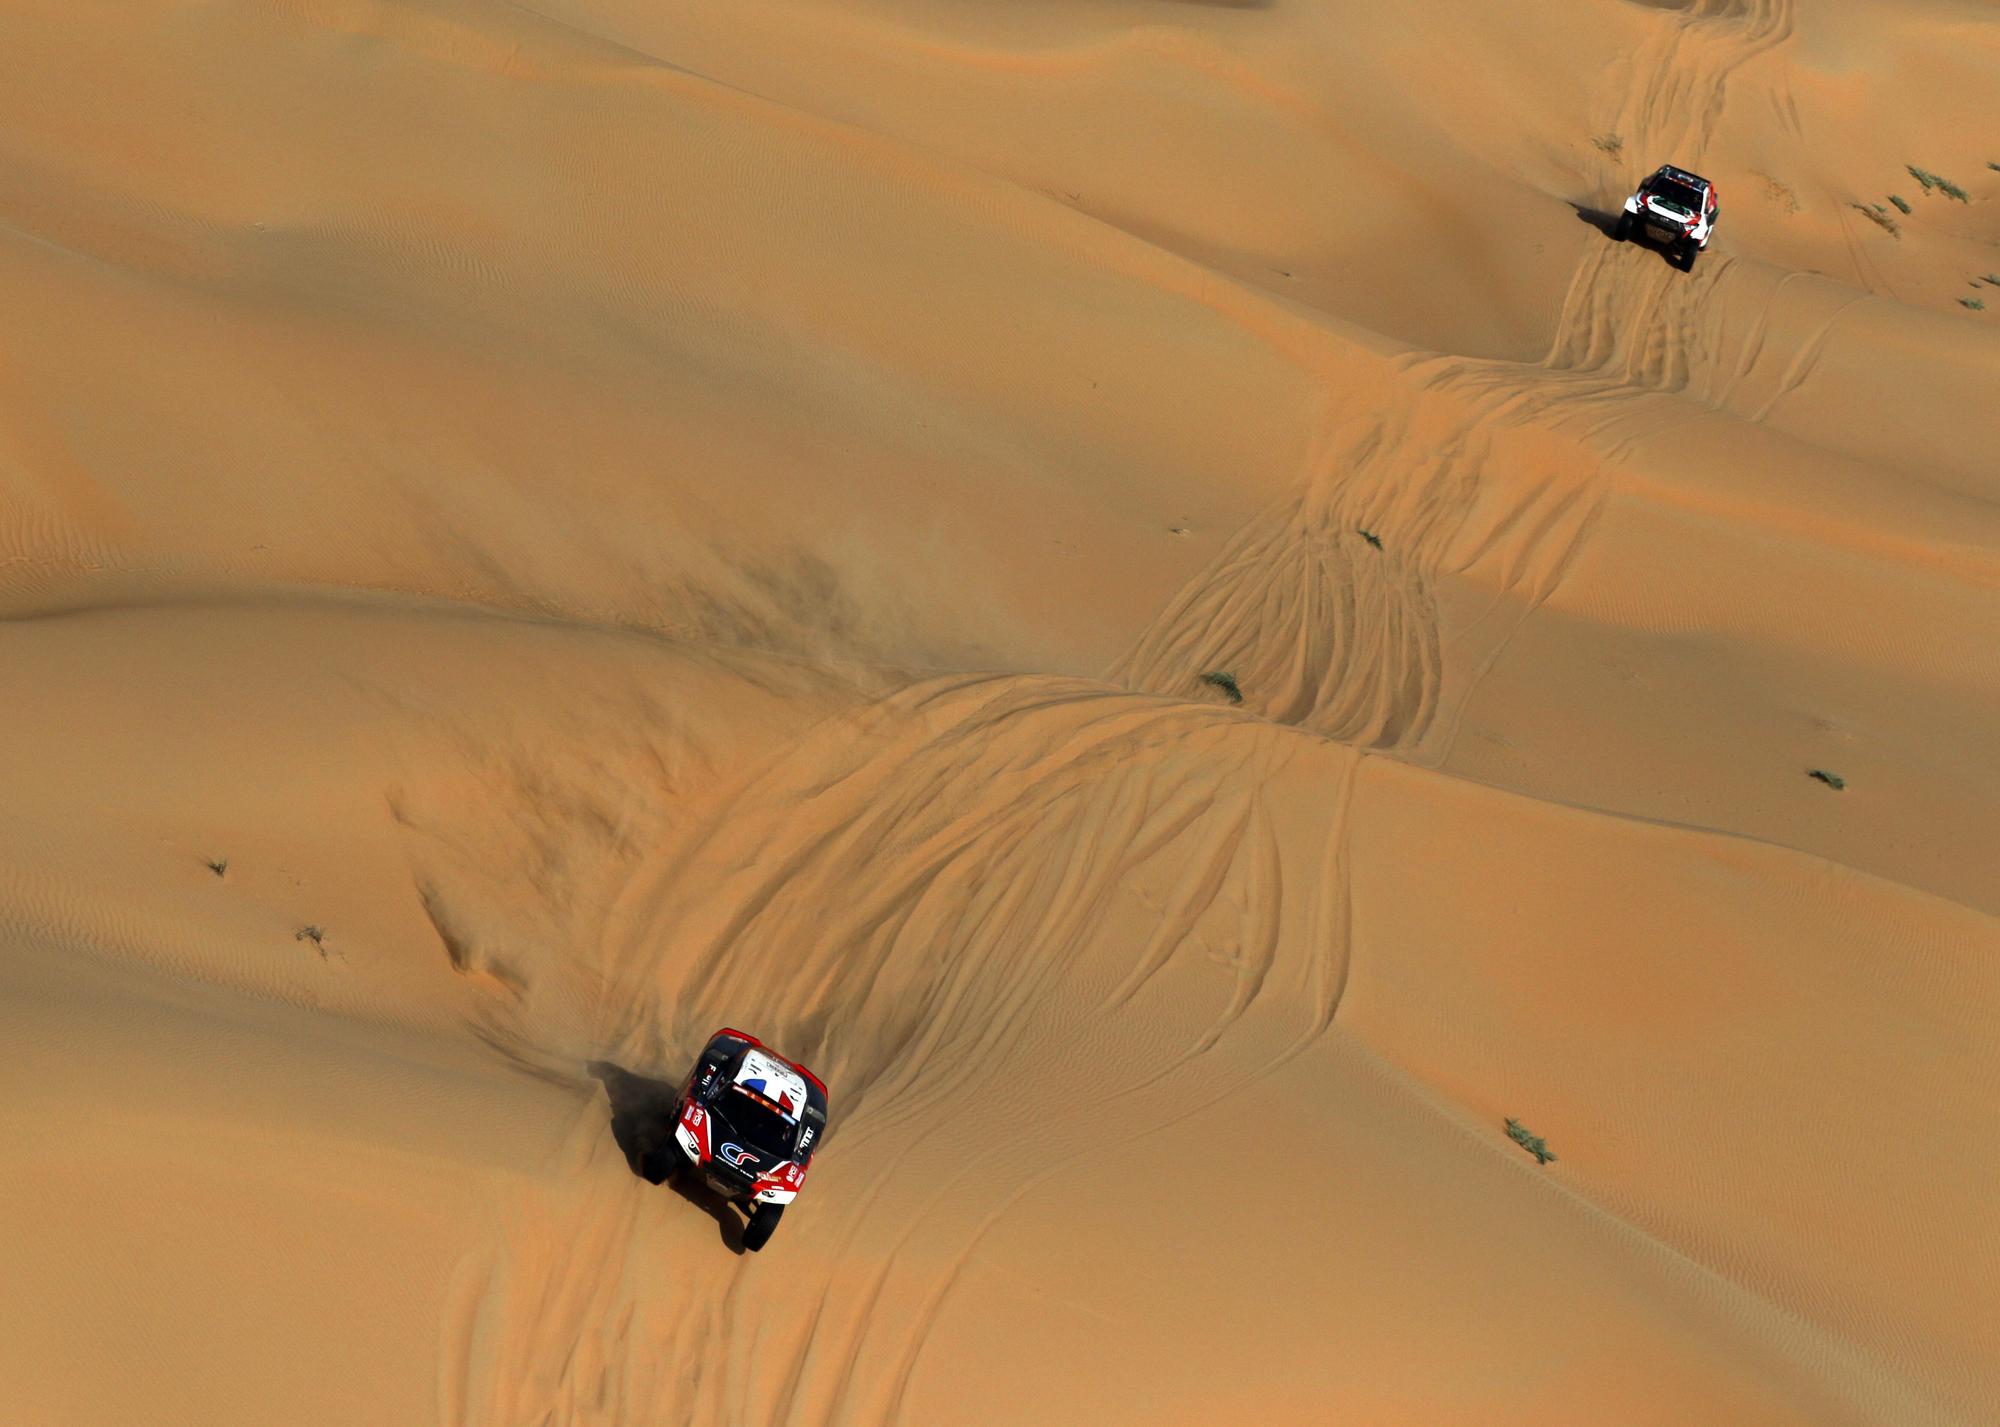 Dakar Rally (163661515).jpg